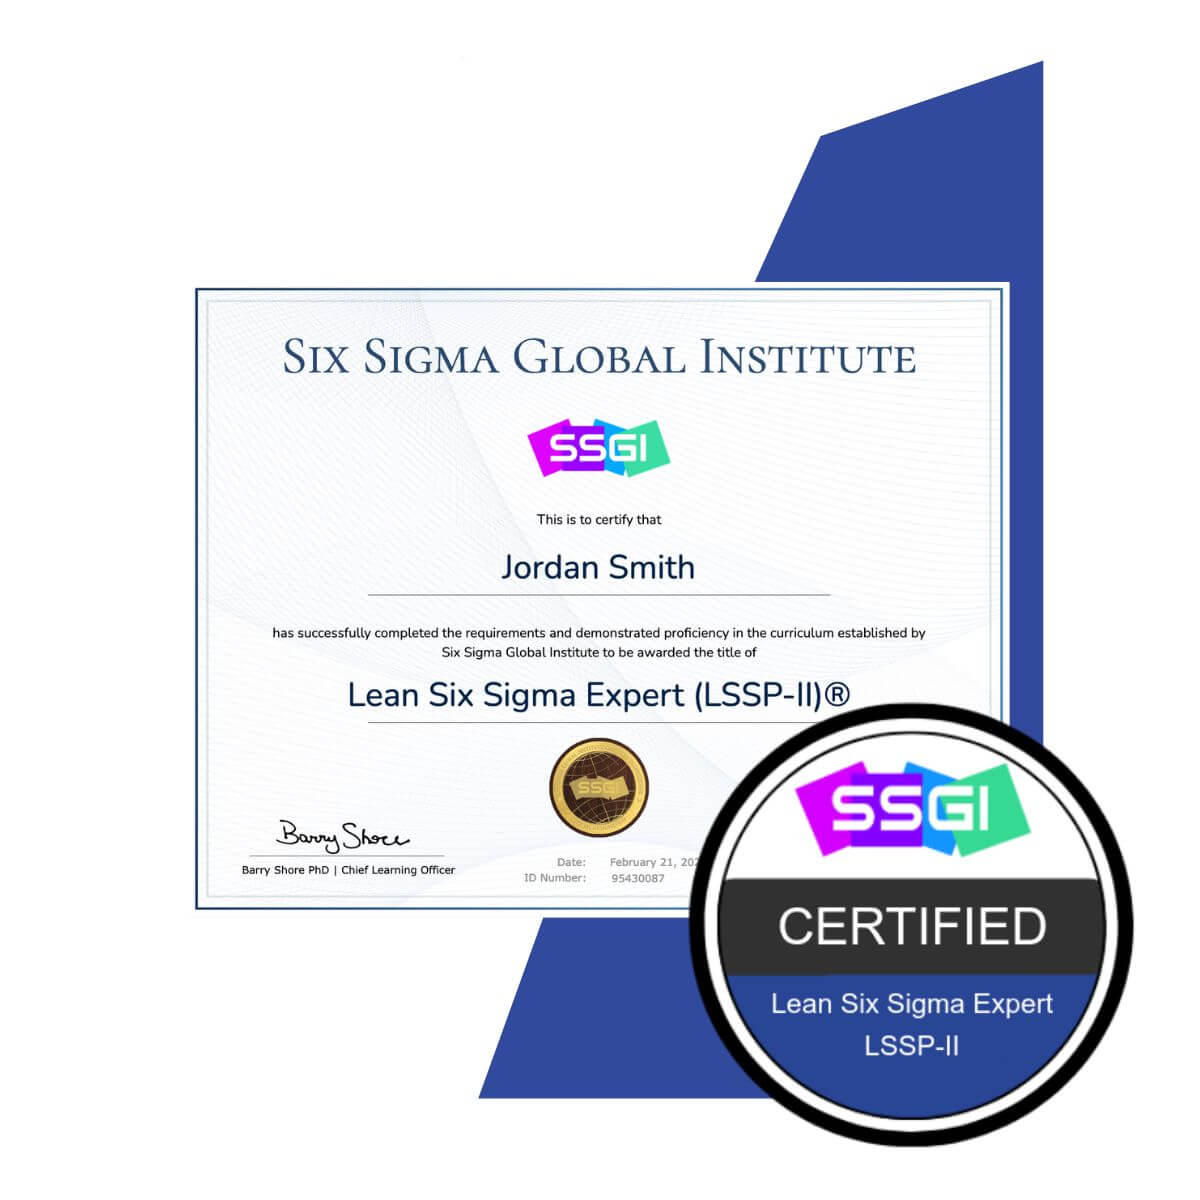 SSGI Lean Six Sigma Expert (LSSP-II)